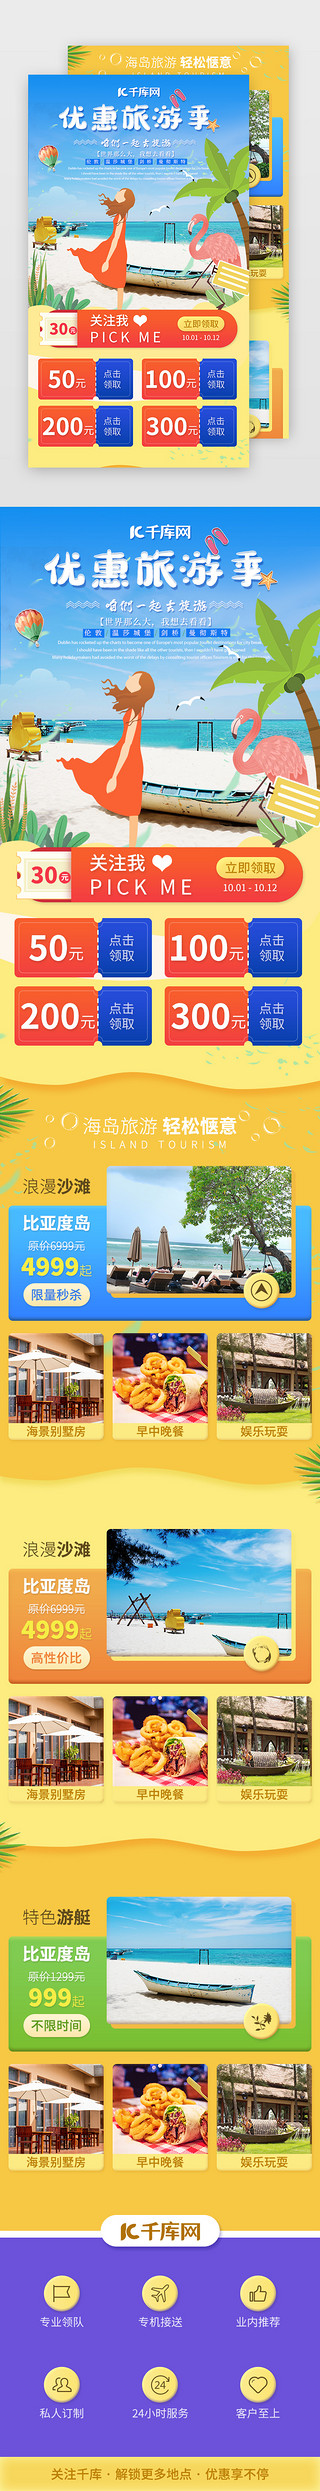 旅行景点海报UI设计素材_国庆旅游旅行景点介绍H5